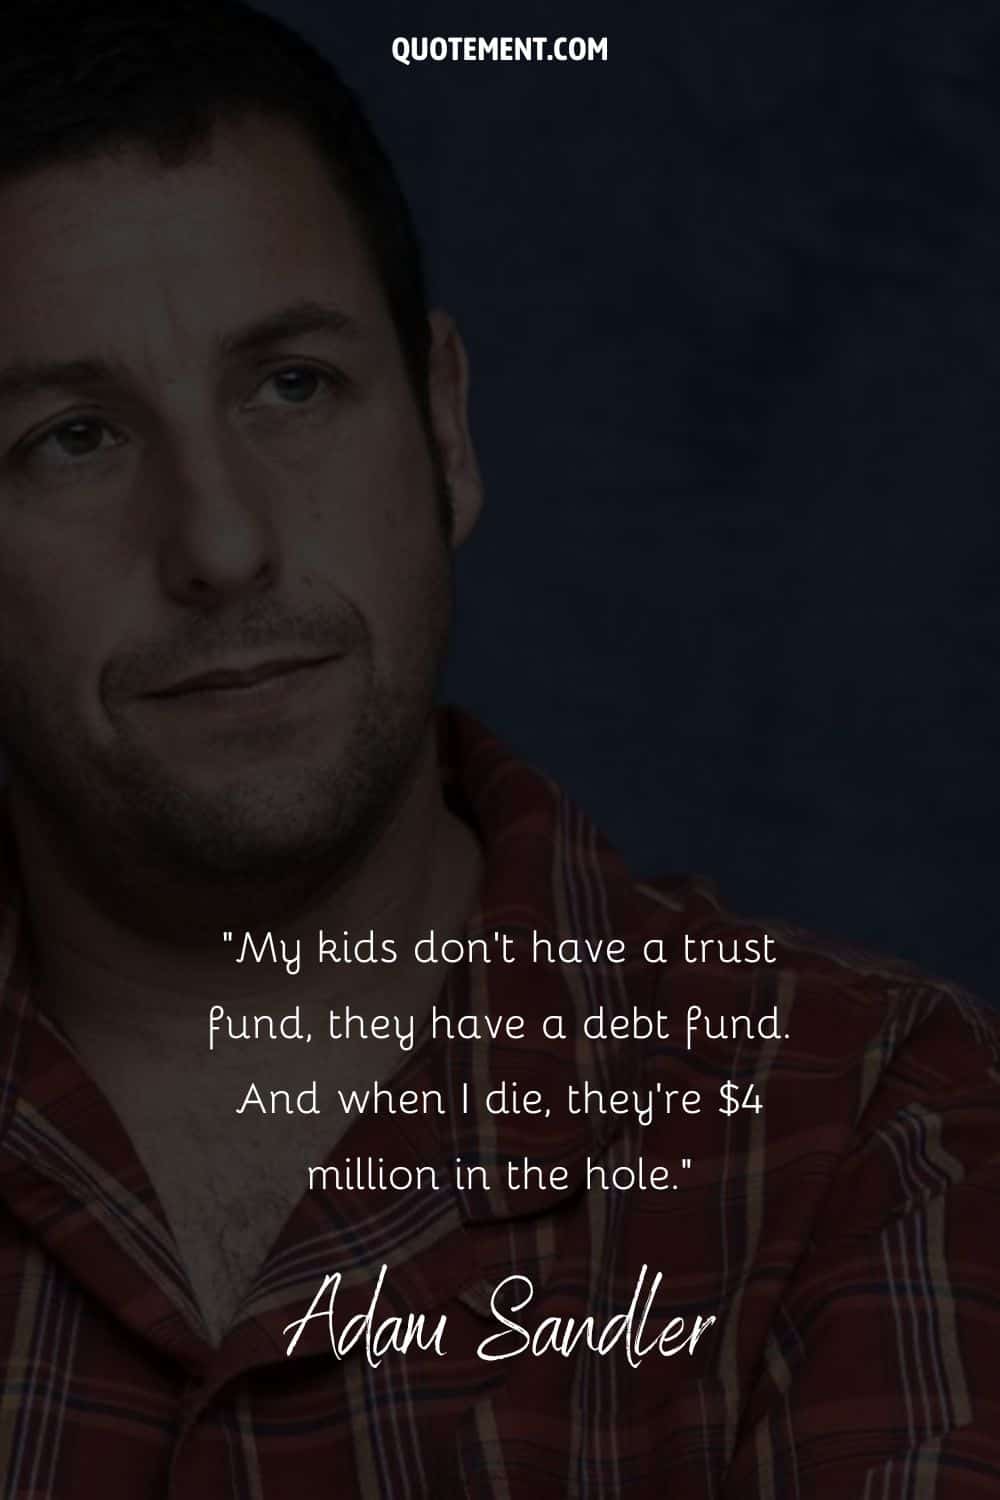 Imagen de Adam Sandler con una cita sobre los niños y las deudas